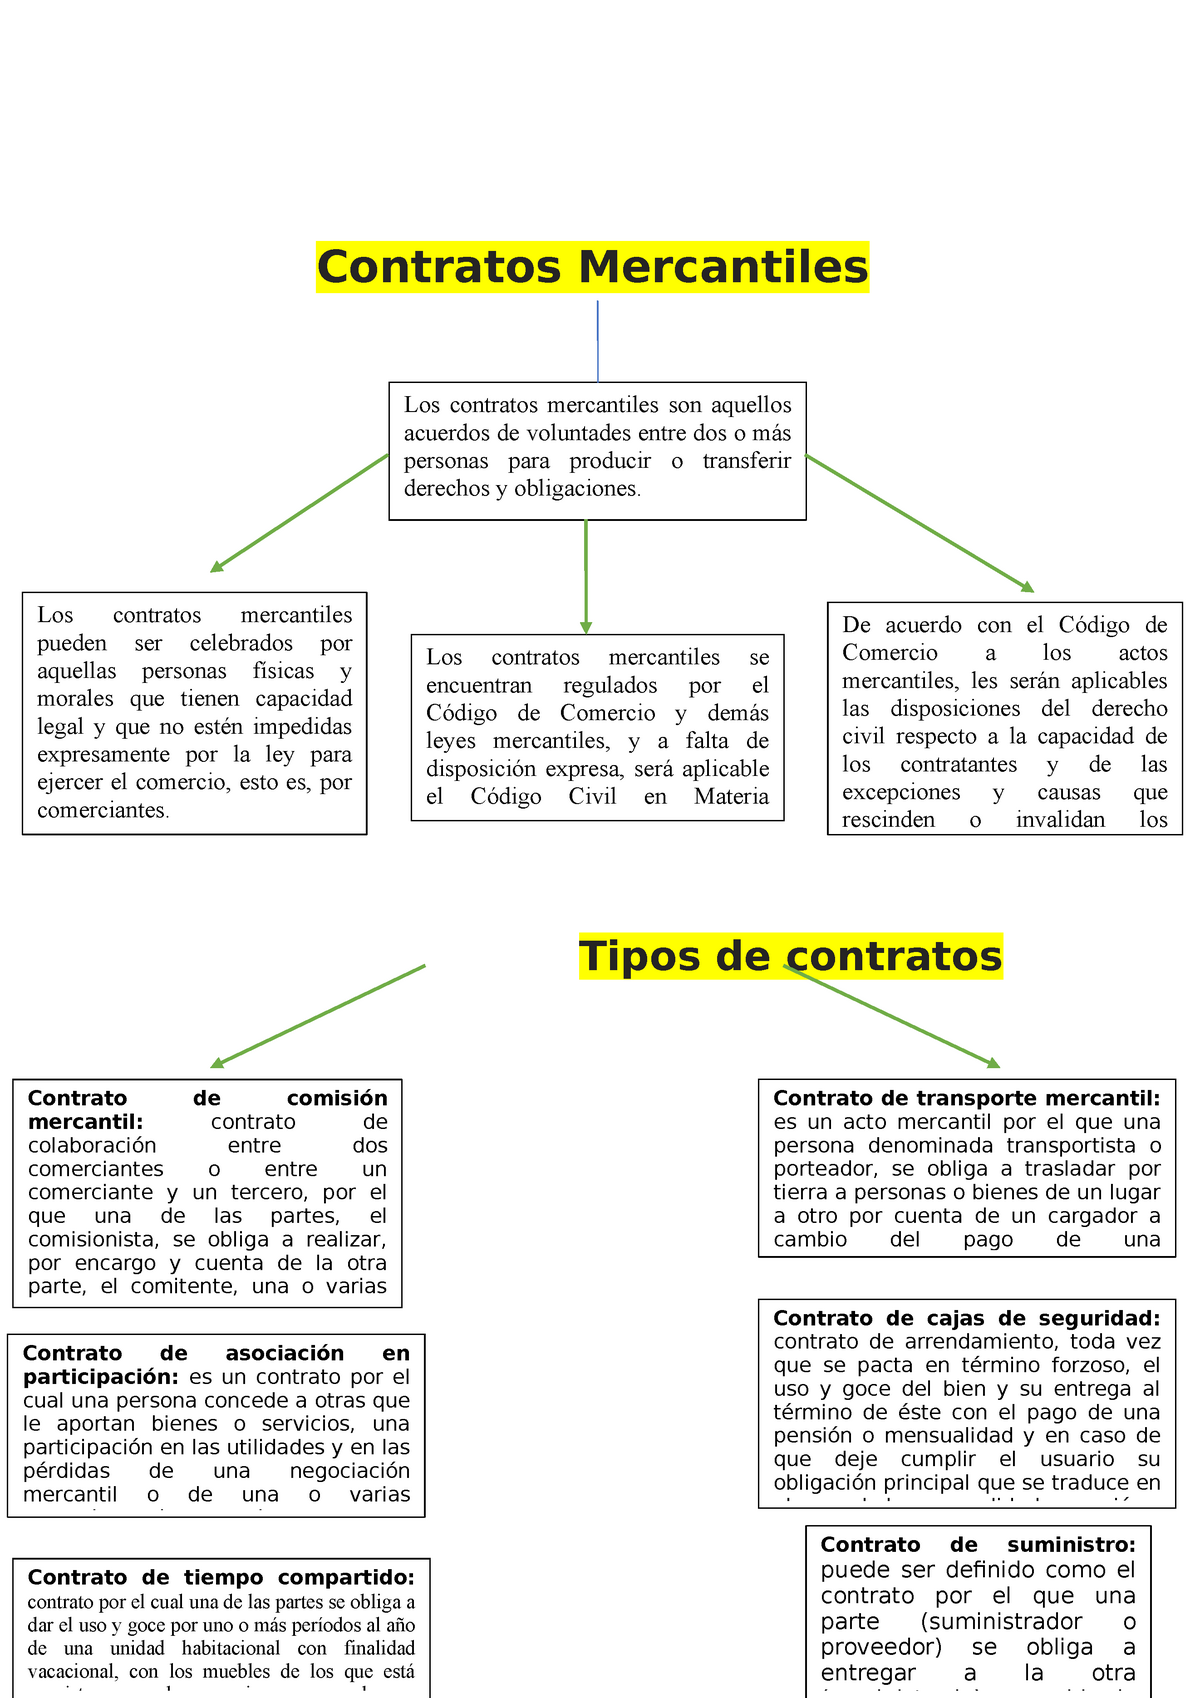 Contrato Mercantil Materiales De Repaso Con Información Confiable Acerca De La Materia Derecho 6383